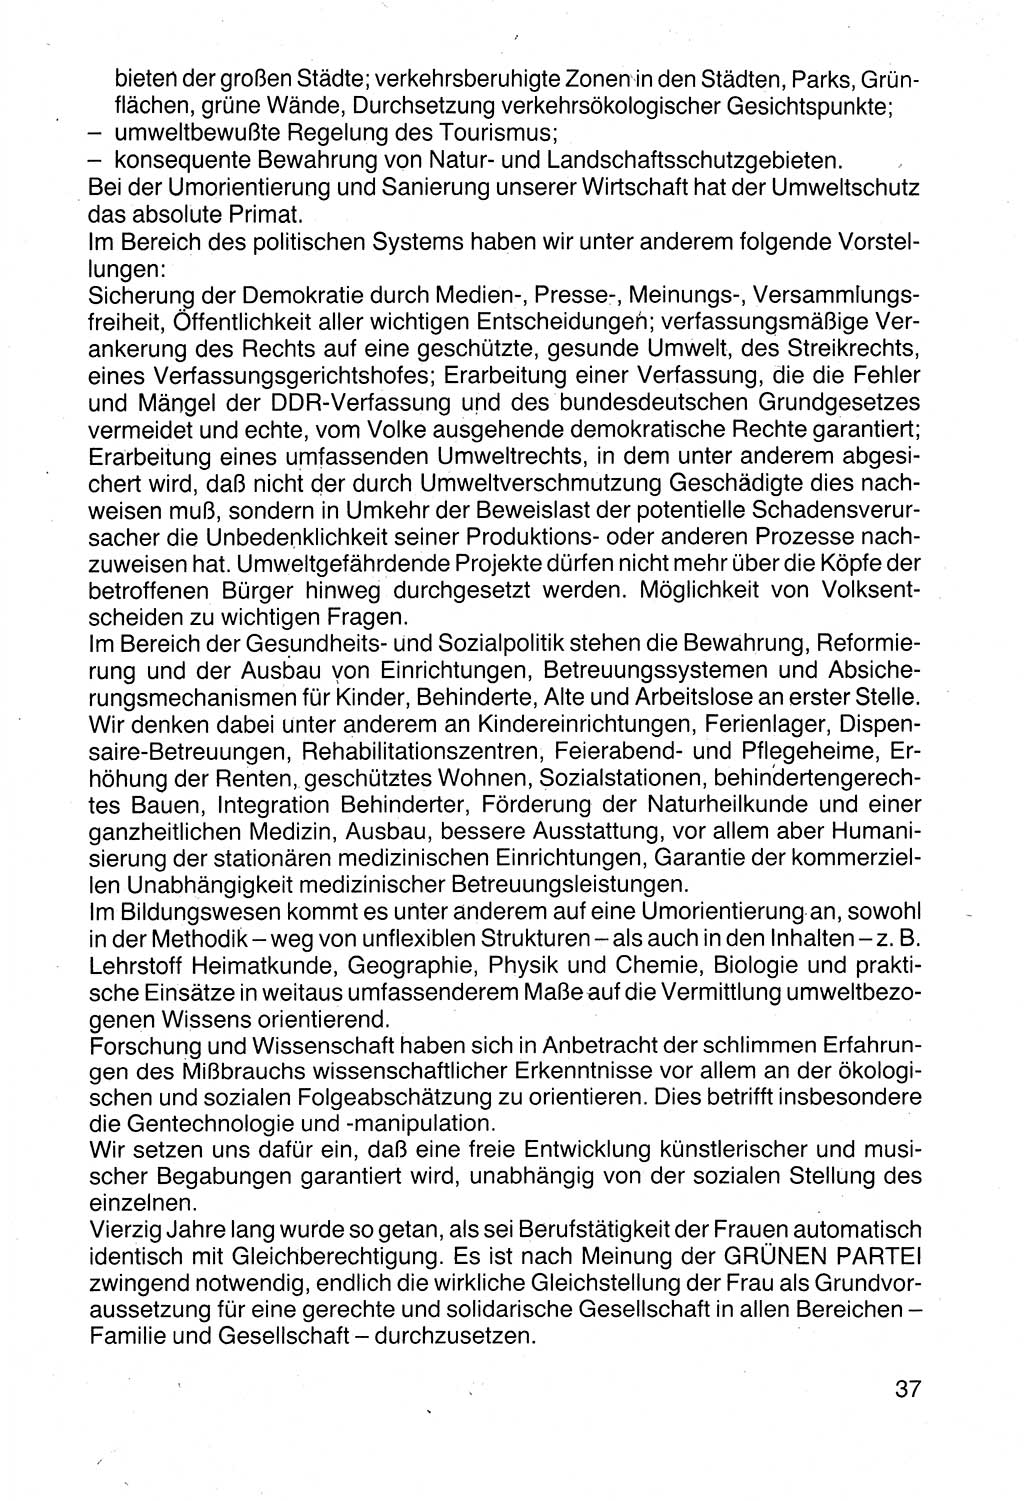 Politische Parteien und Bewegungen der DDR (Deutsche Demokratische Republik) über sich selbst 1990, Seite 37 (Pol. Part. Bew. DDR 1990, S. 37)